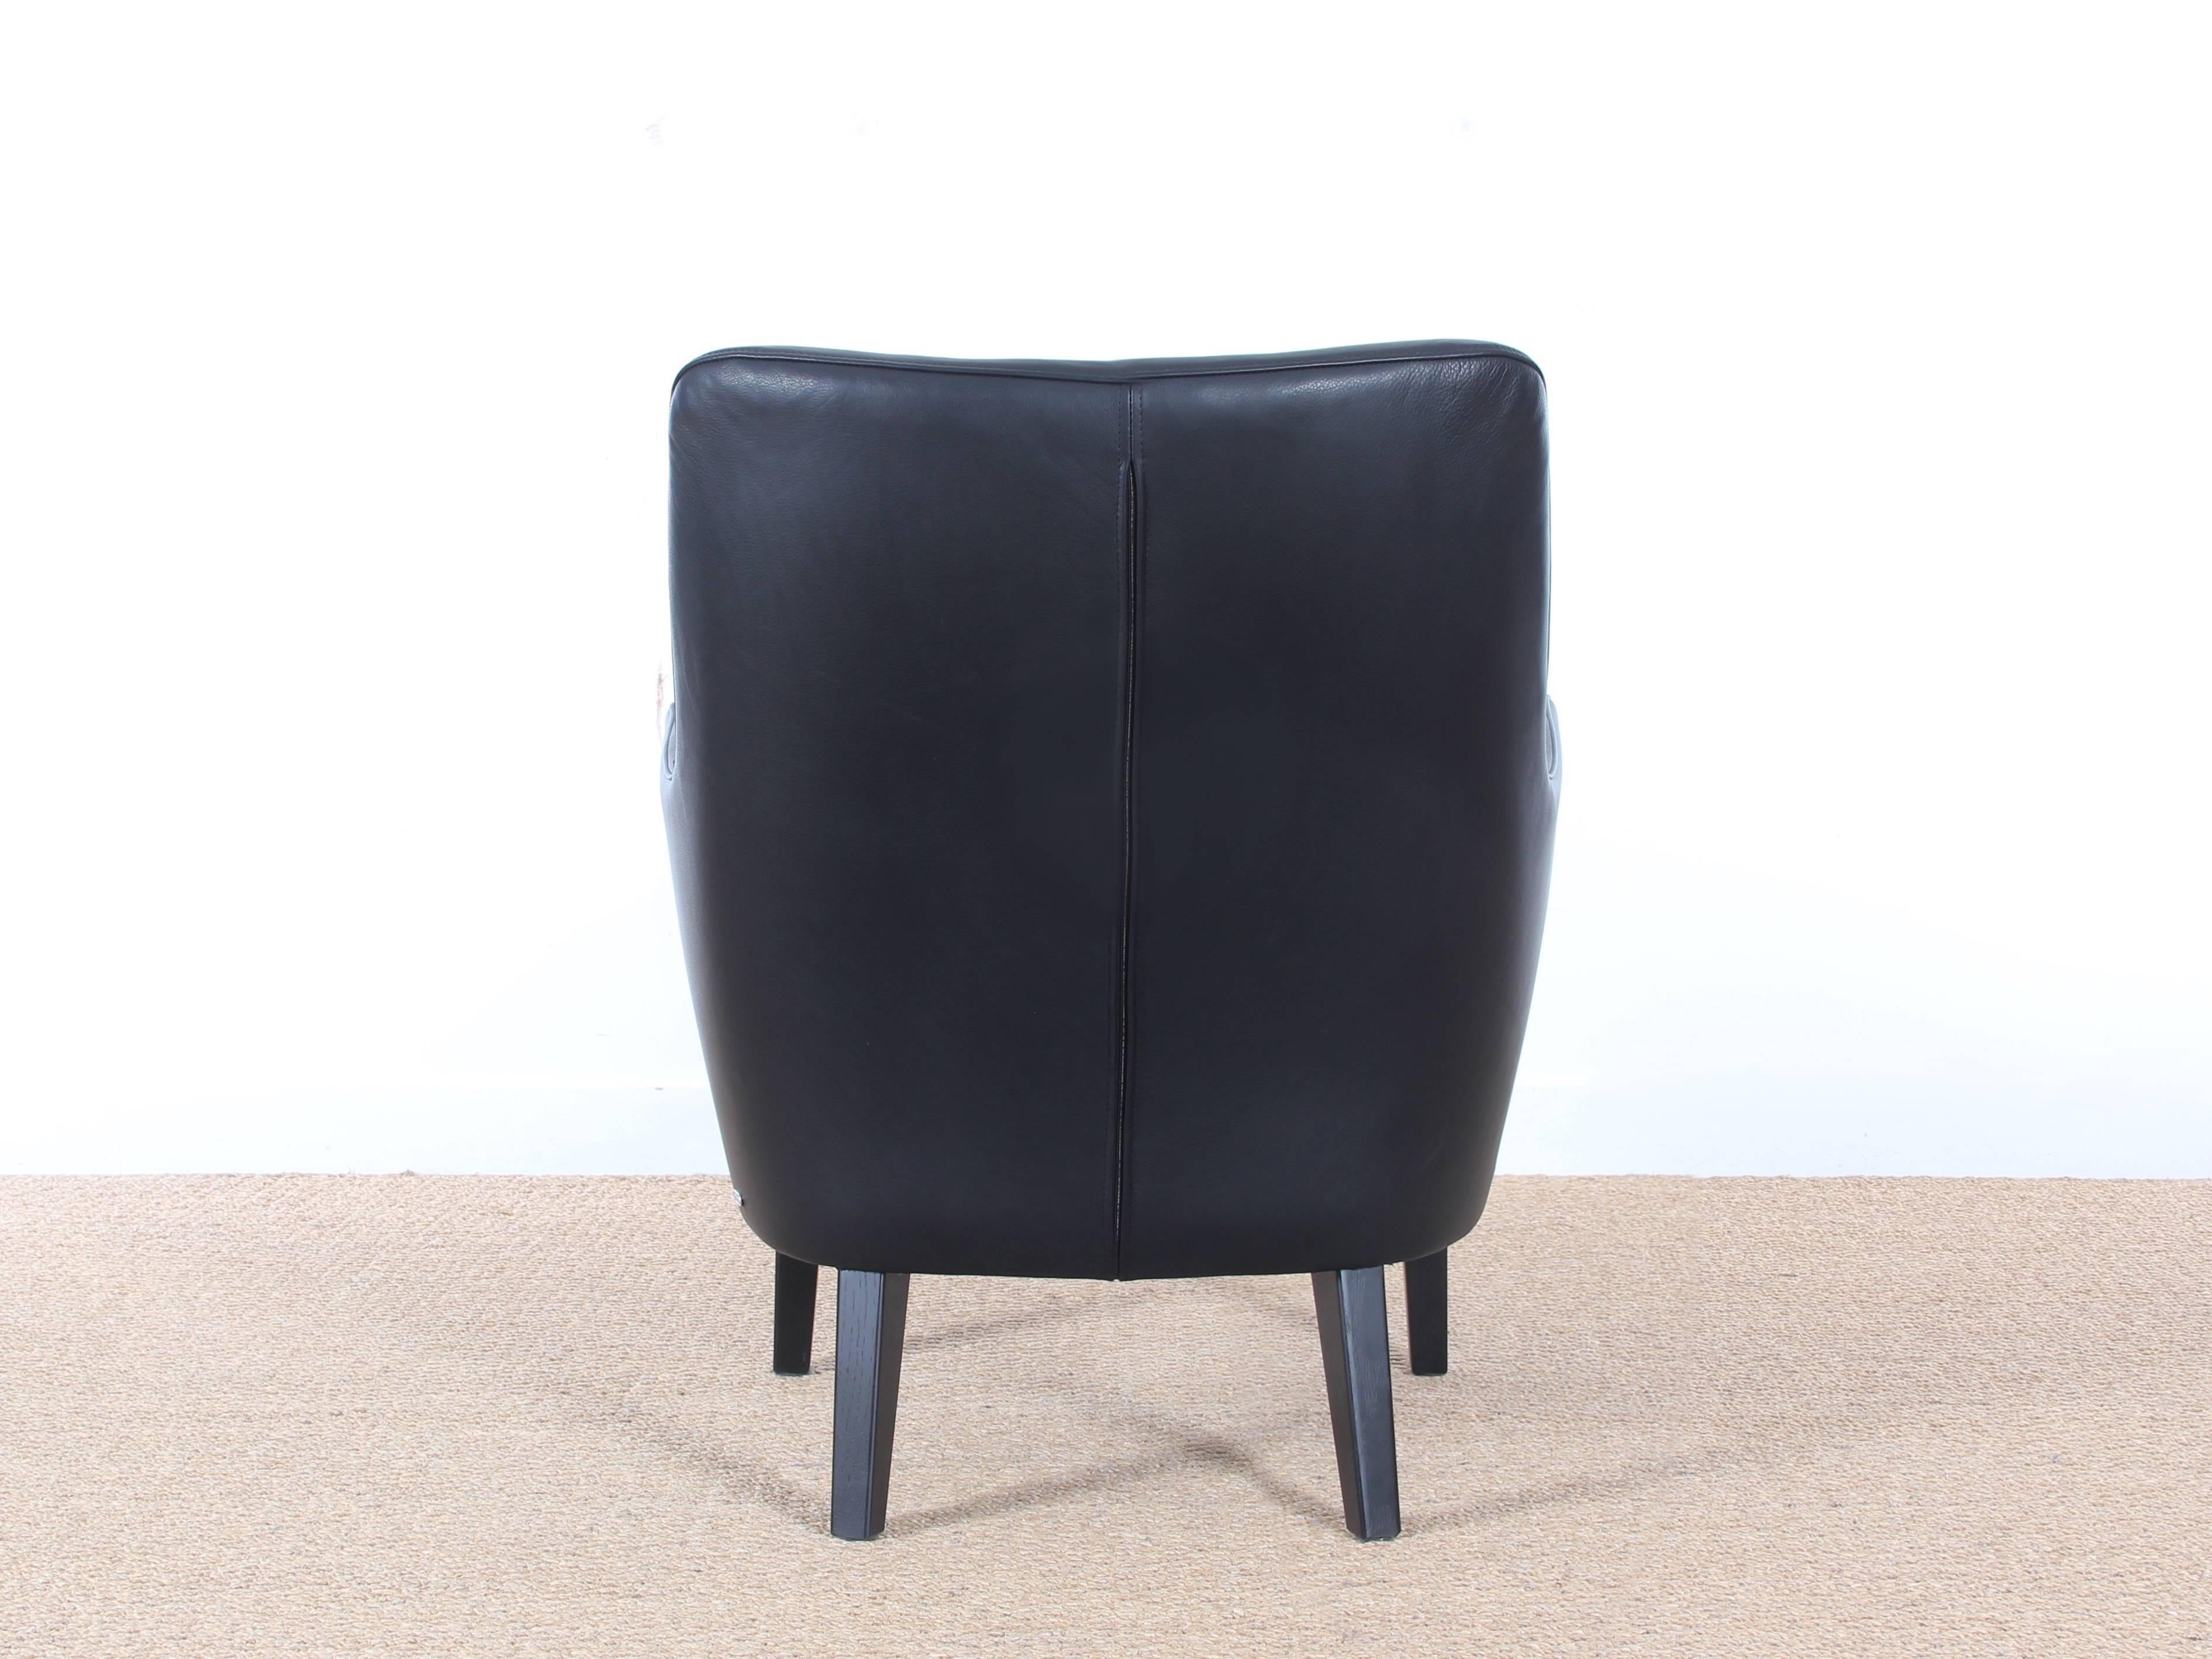 Danish Mid-Century Modern Scandinavian Lounge Chair by Arne Vodder AV 53 New Release For Sale